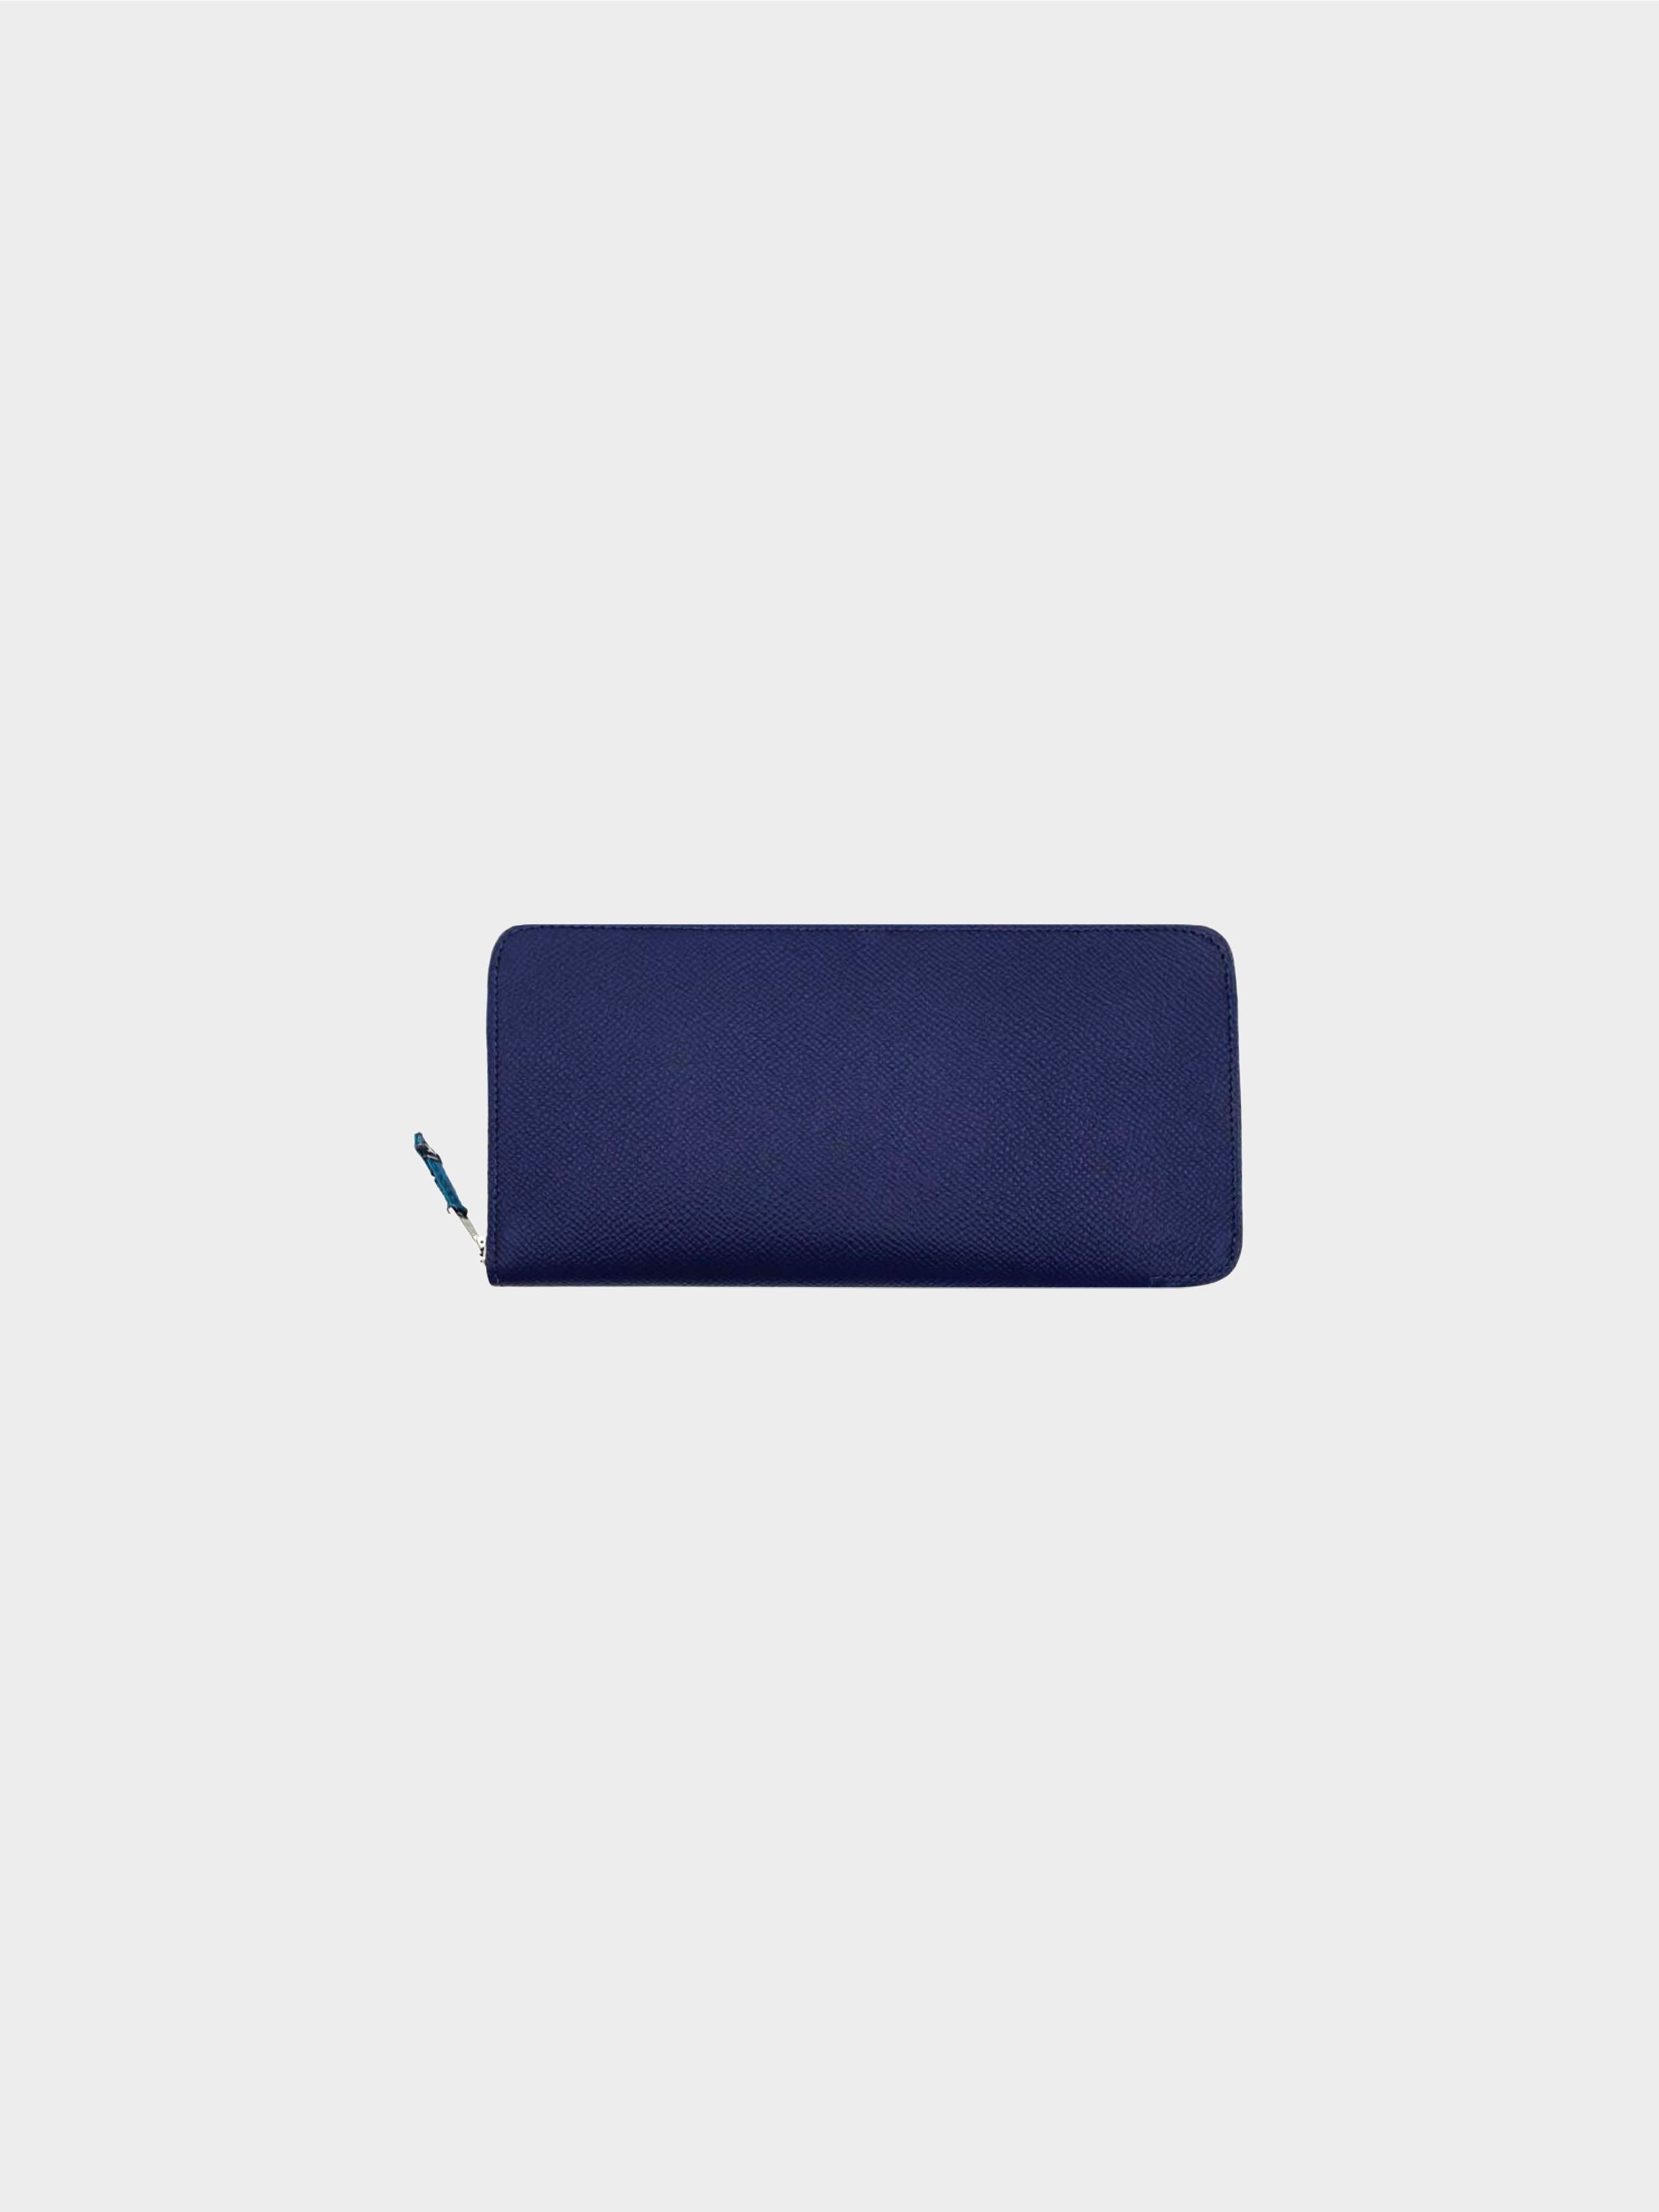 Hermès 2014 Navy Blue Azap Silk-in Long Wallet